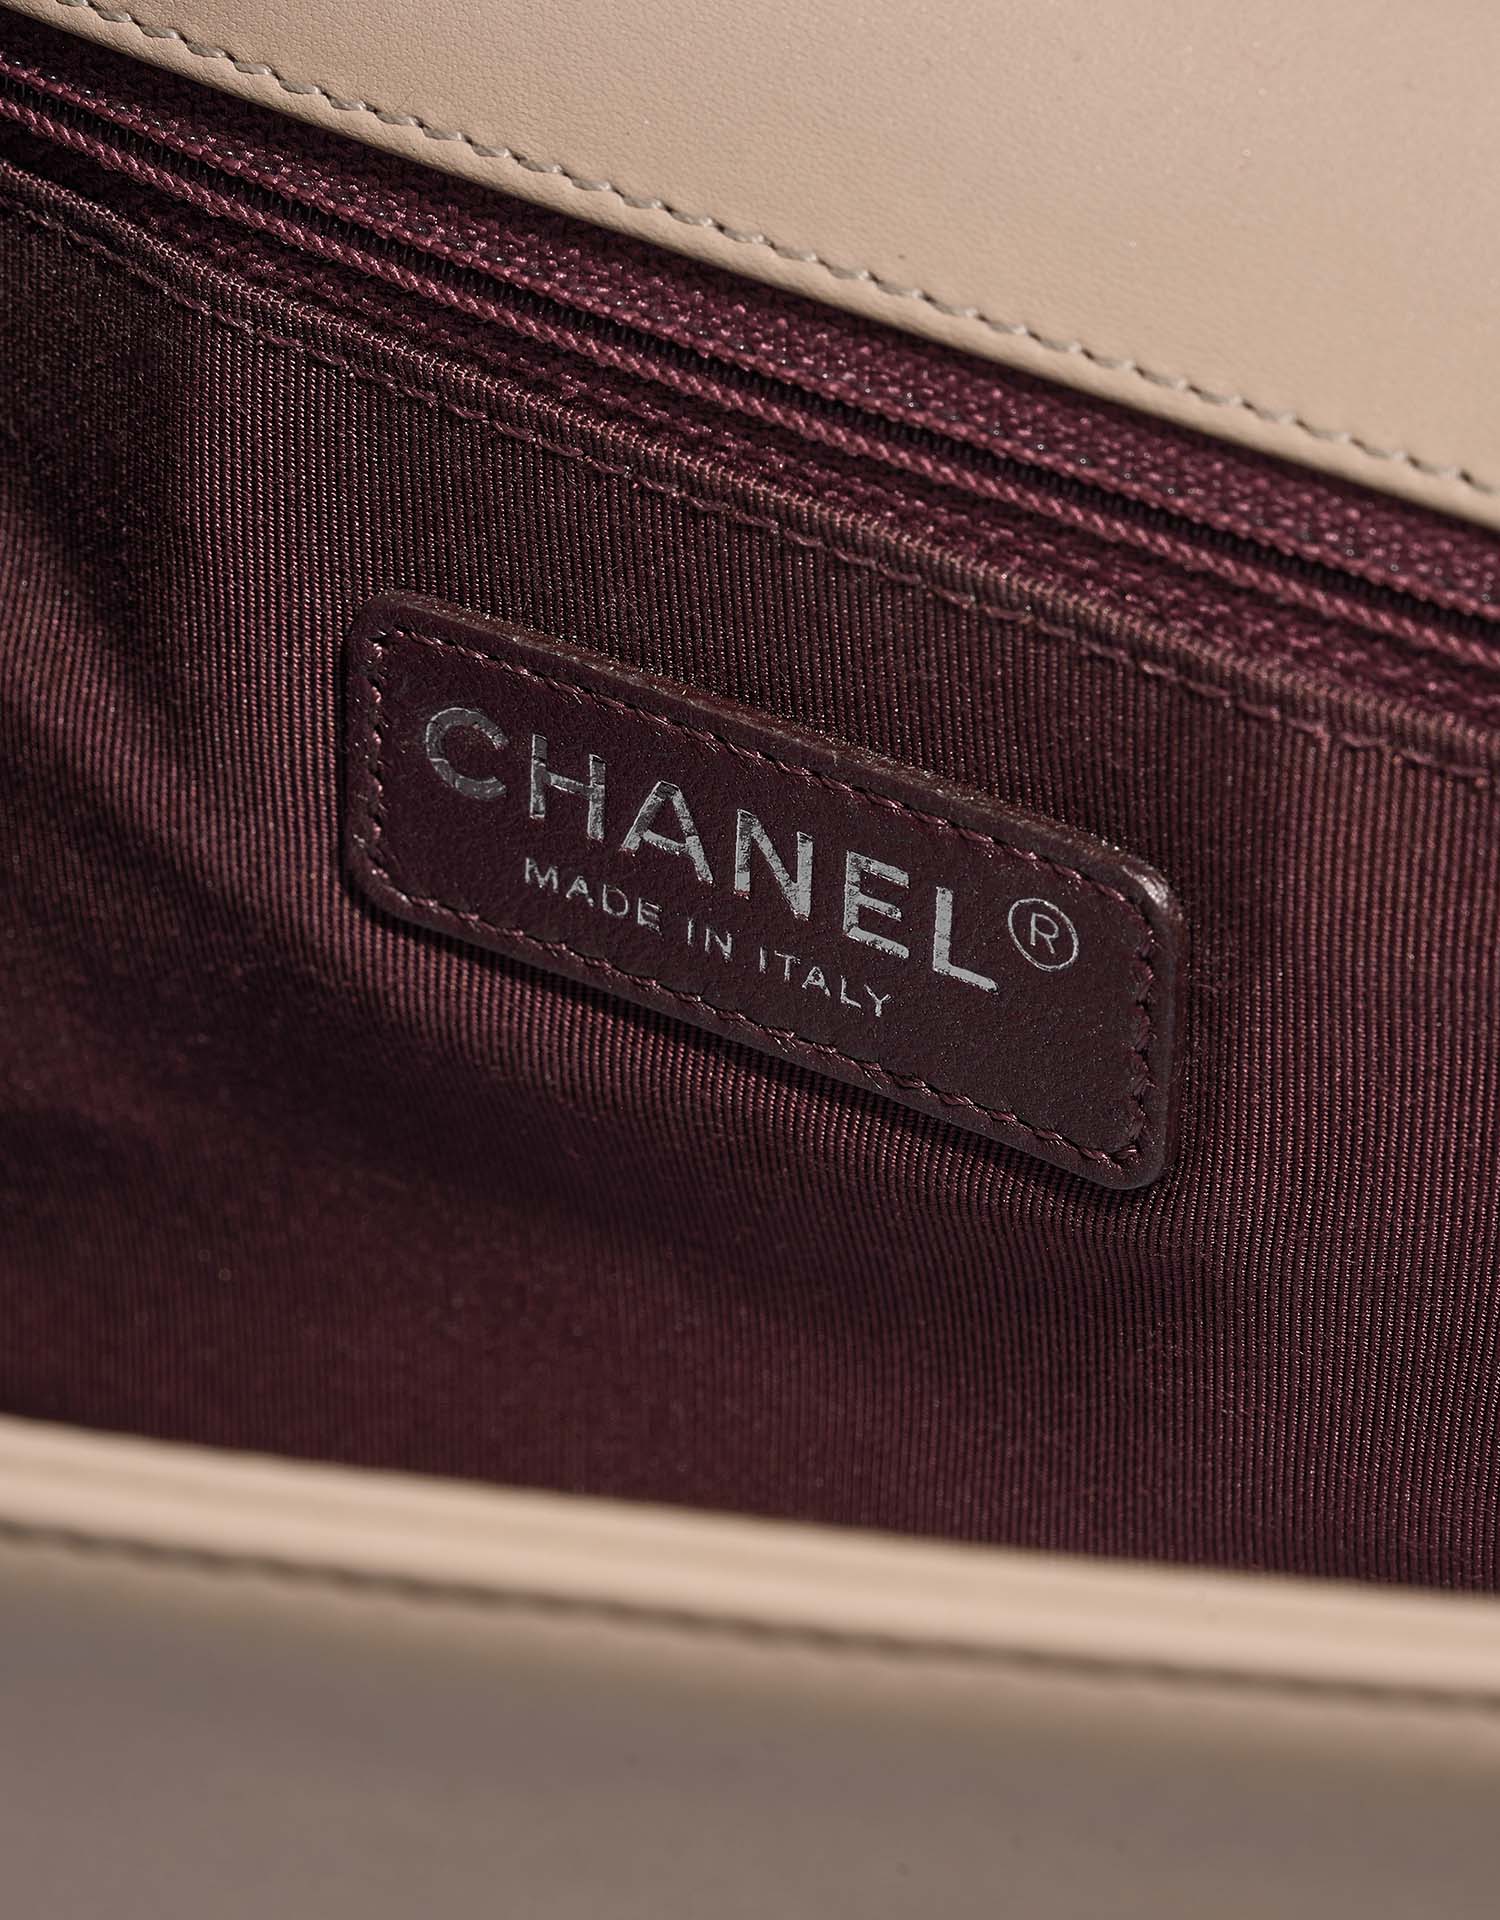 Chanel Boy NewMedium Beige Logo  | Sell your designer bag on Saclab.com